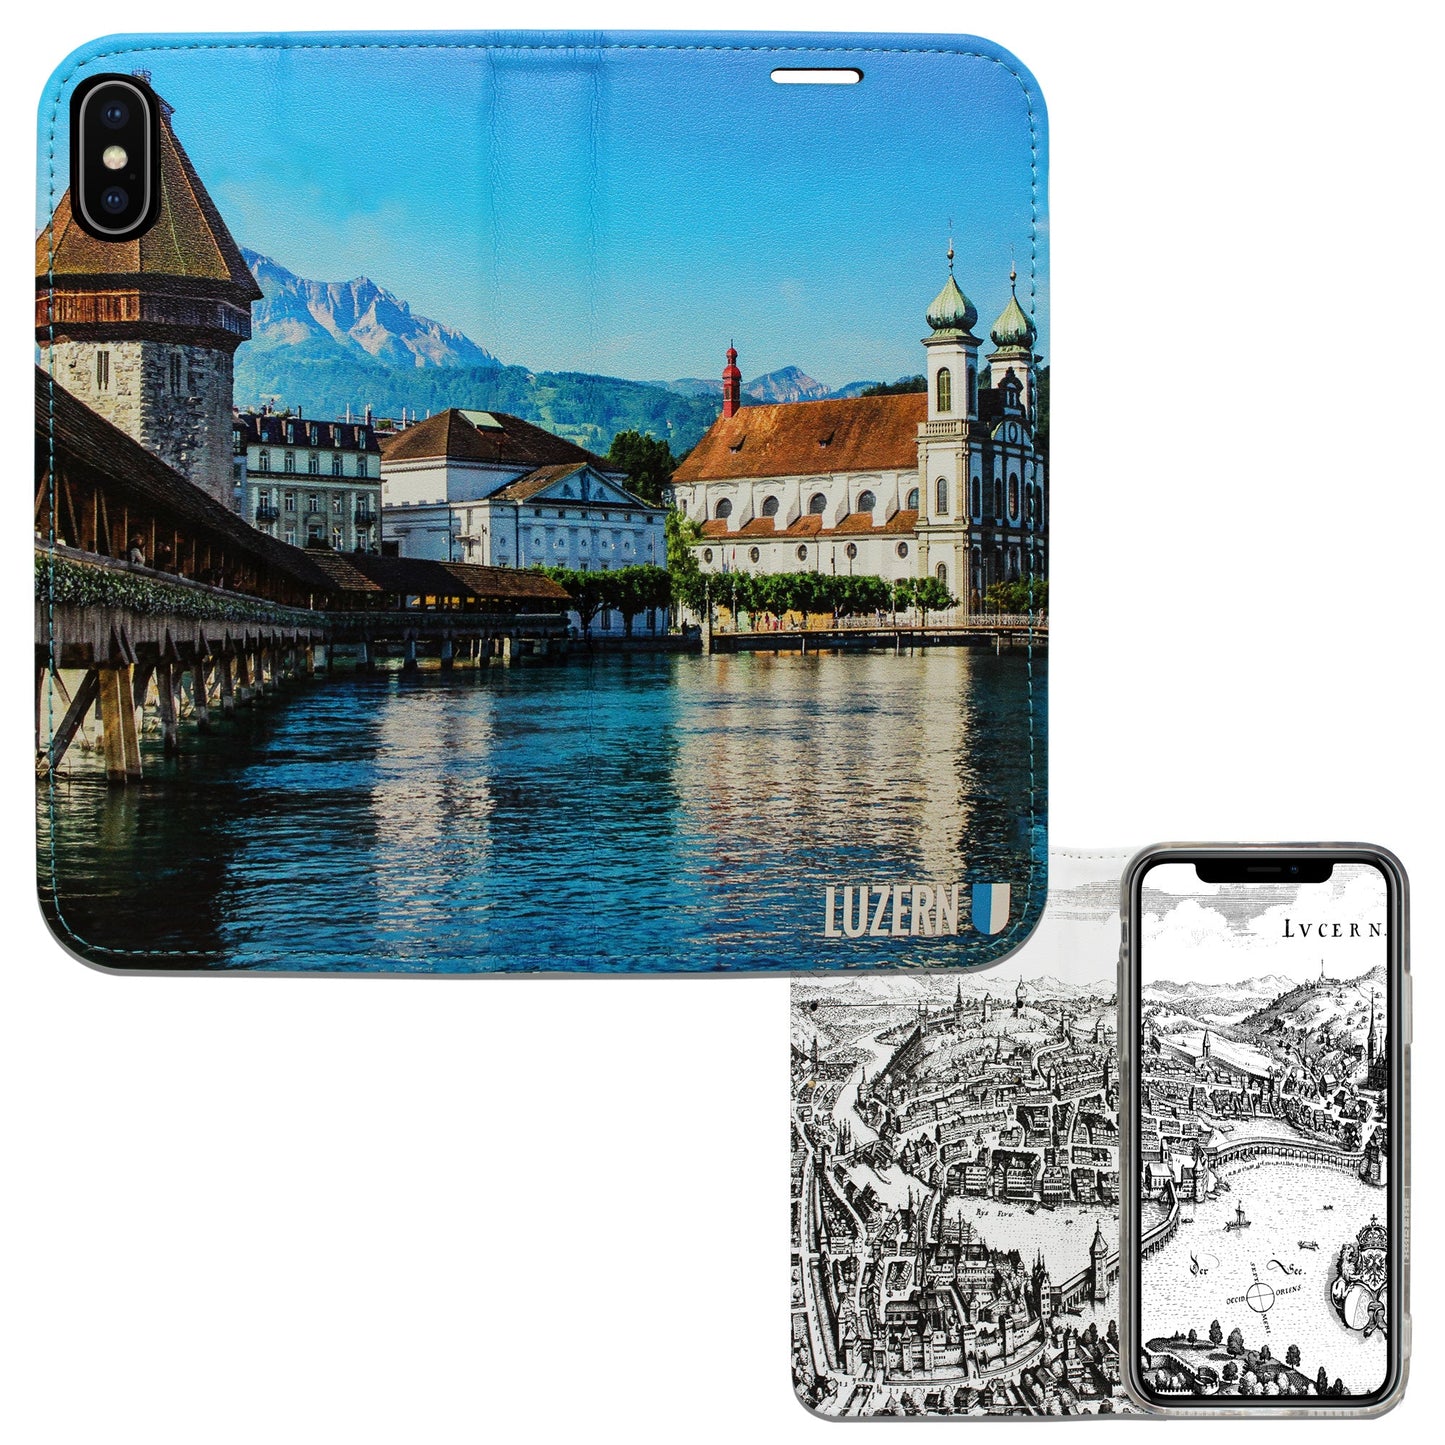 Luzern City Panorama Case für iPhone XS Max